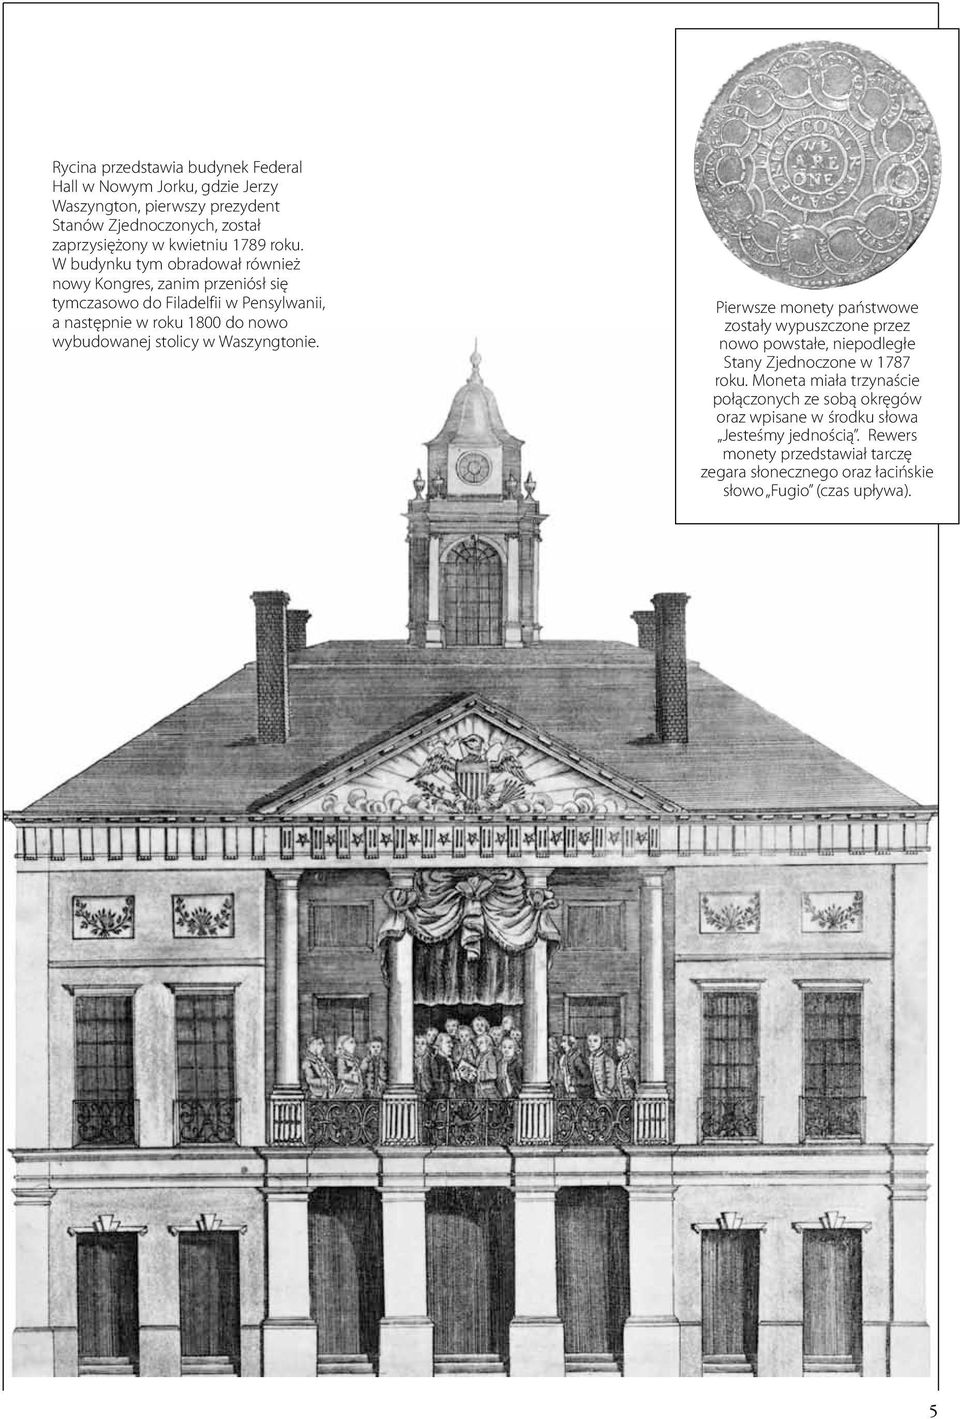 stolicy w Waszyngtonie. Pierwsze monety państwowe zostały wypuszczone przez nowo powstałe, niepodległe Stany Zjednoczone w 1787 roku.